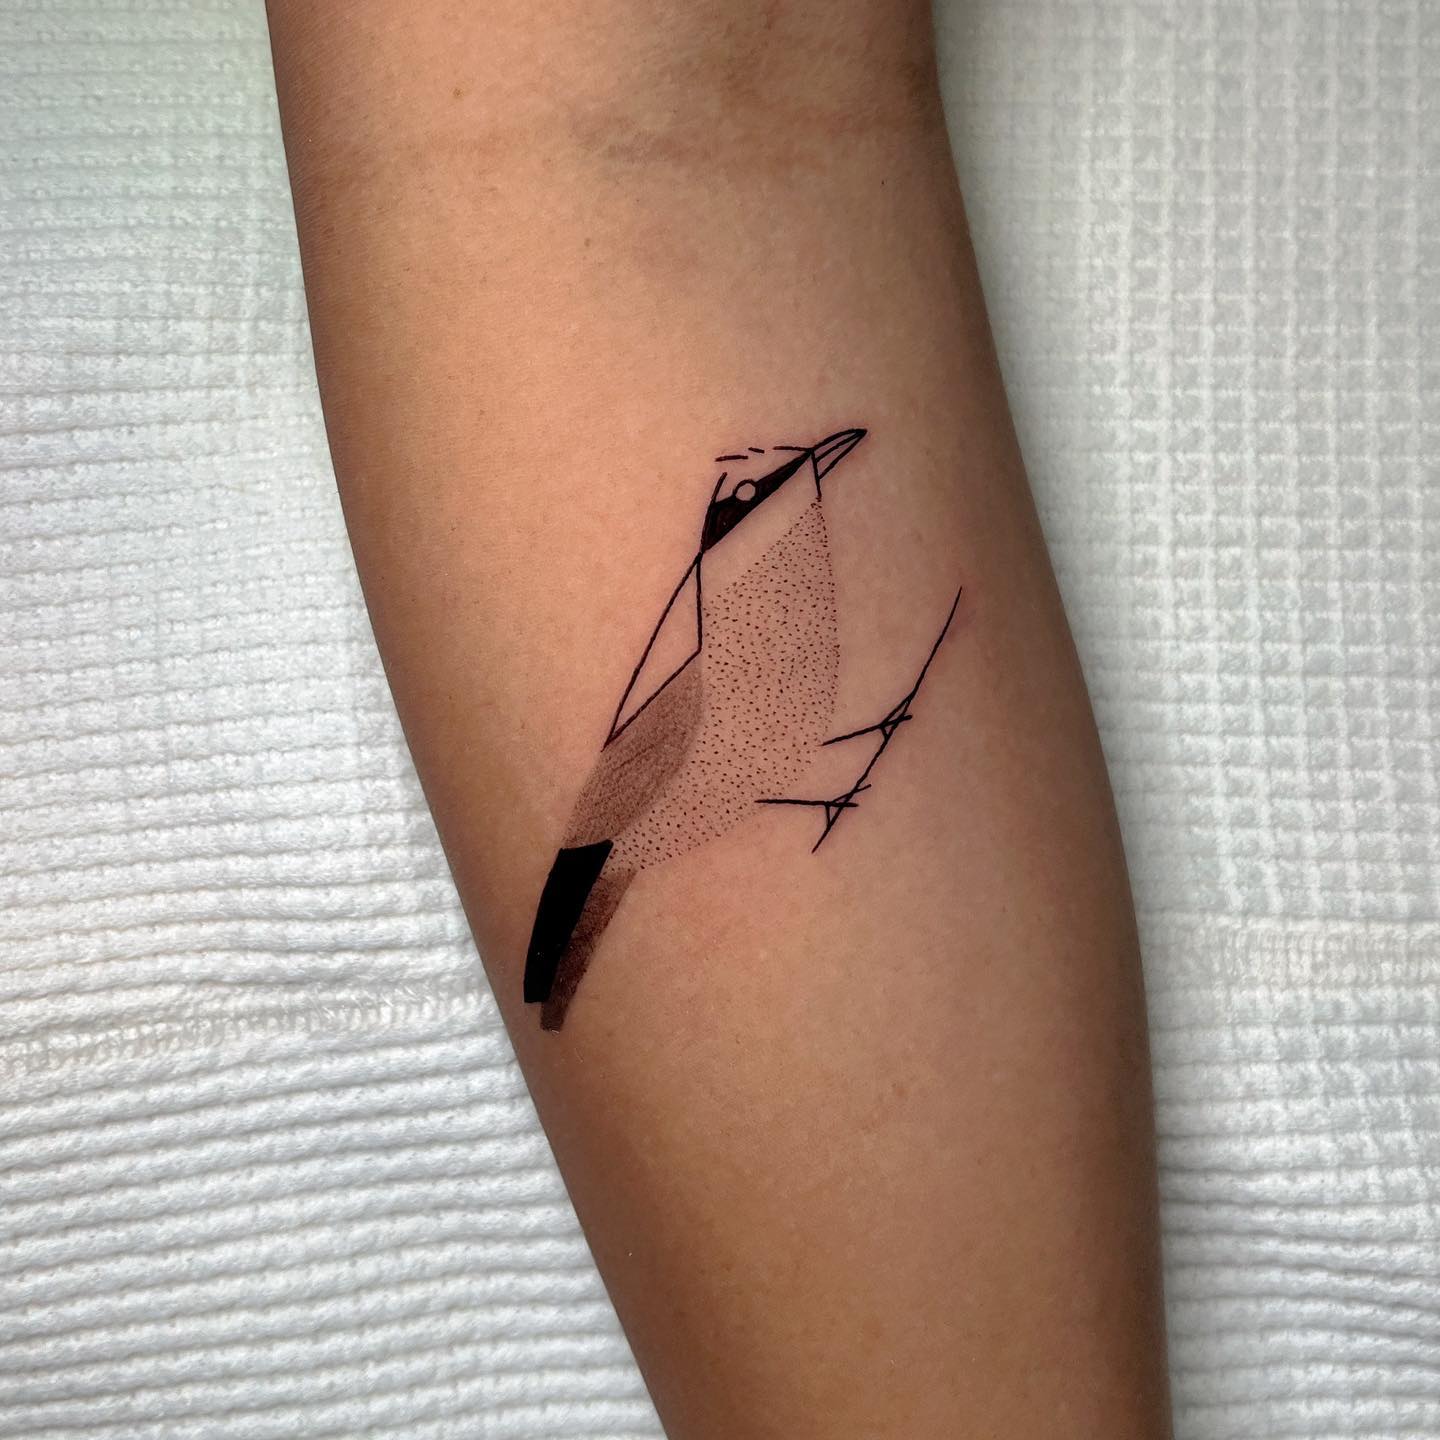 Small bird tattoo by